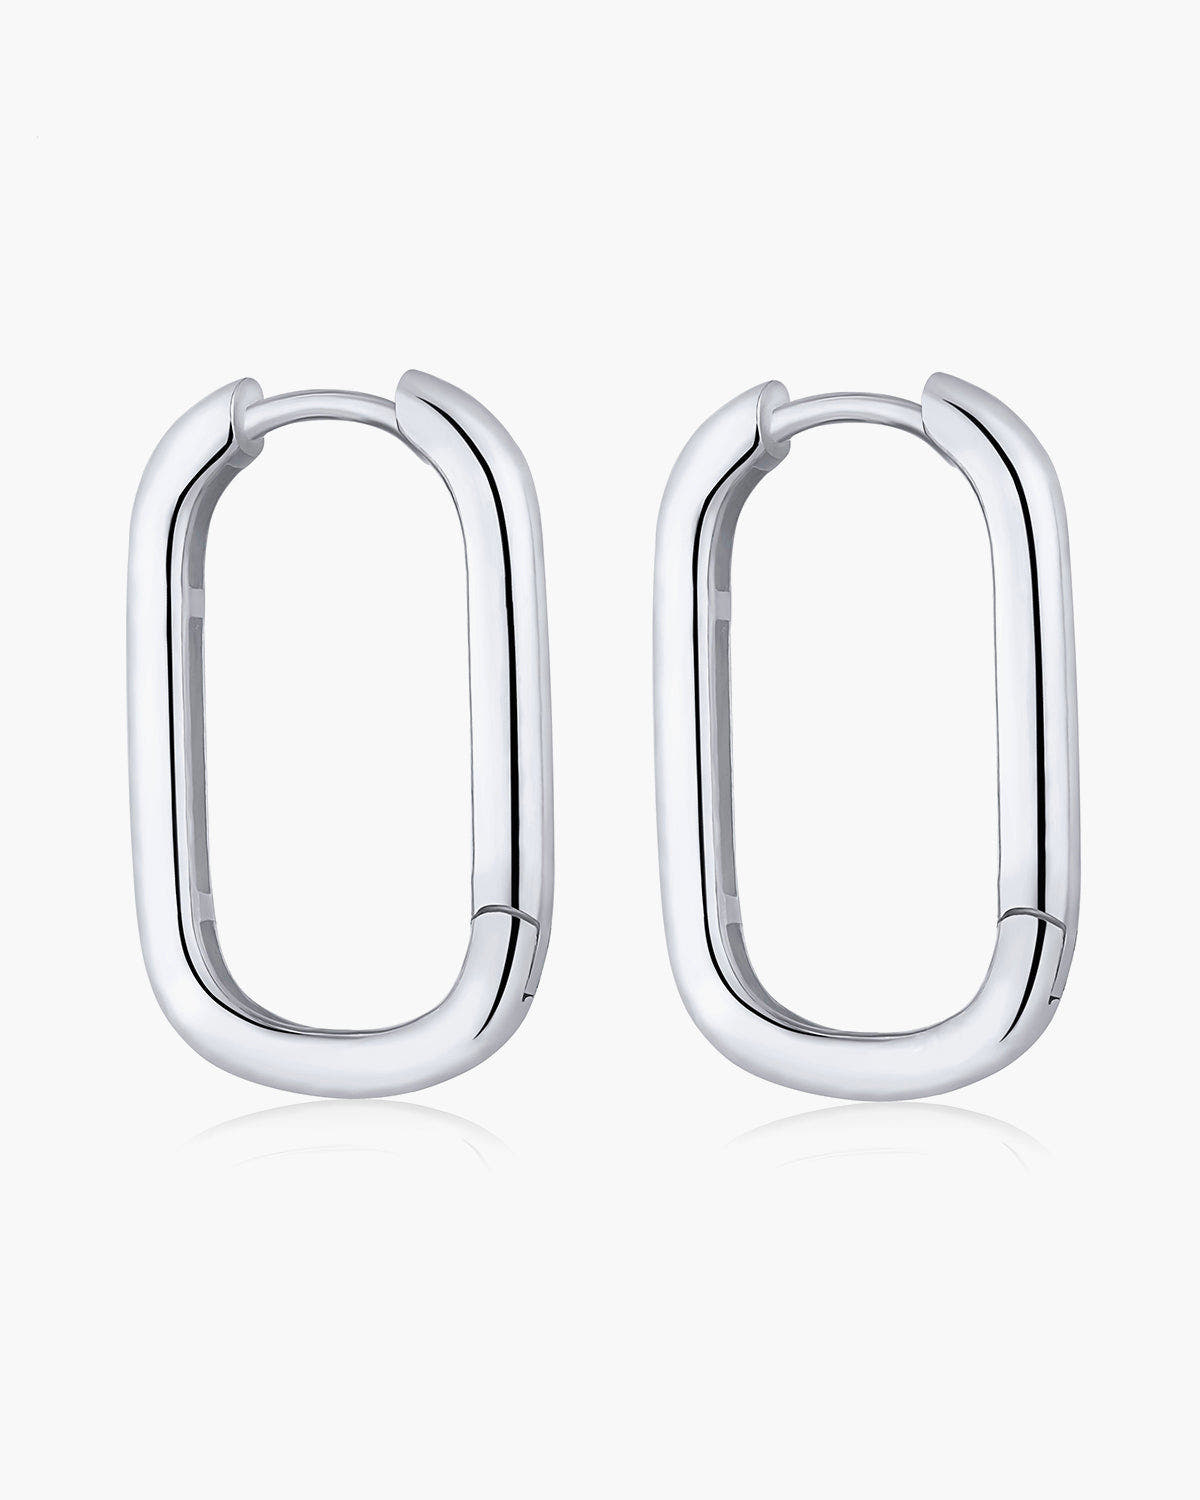 Statement silver hoop earrings Ollijewelry